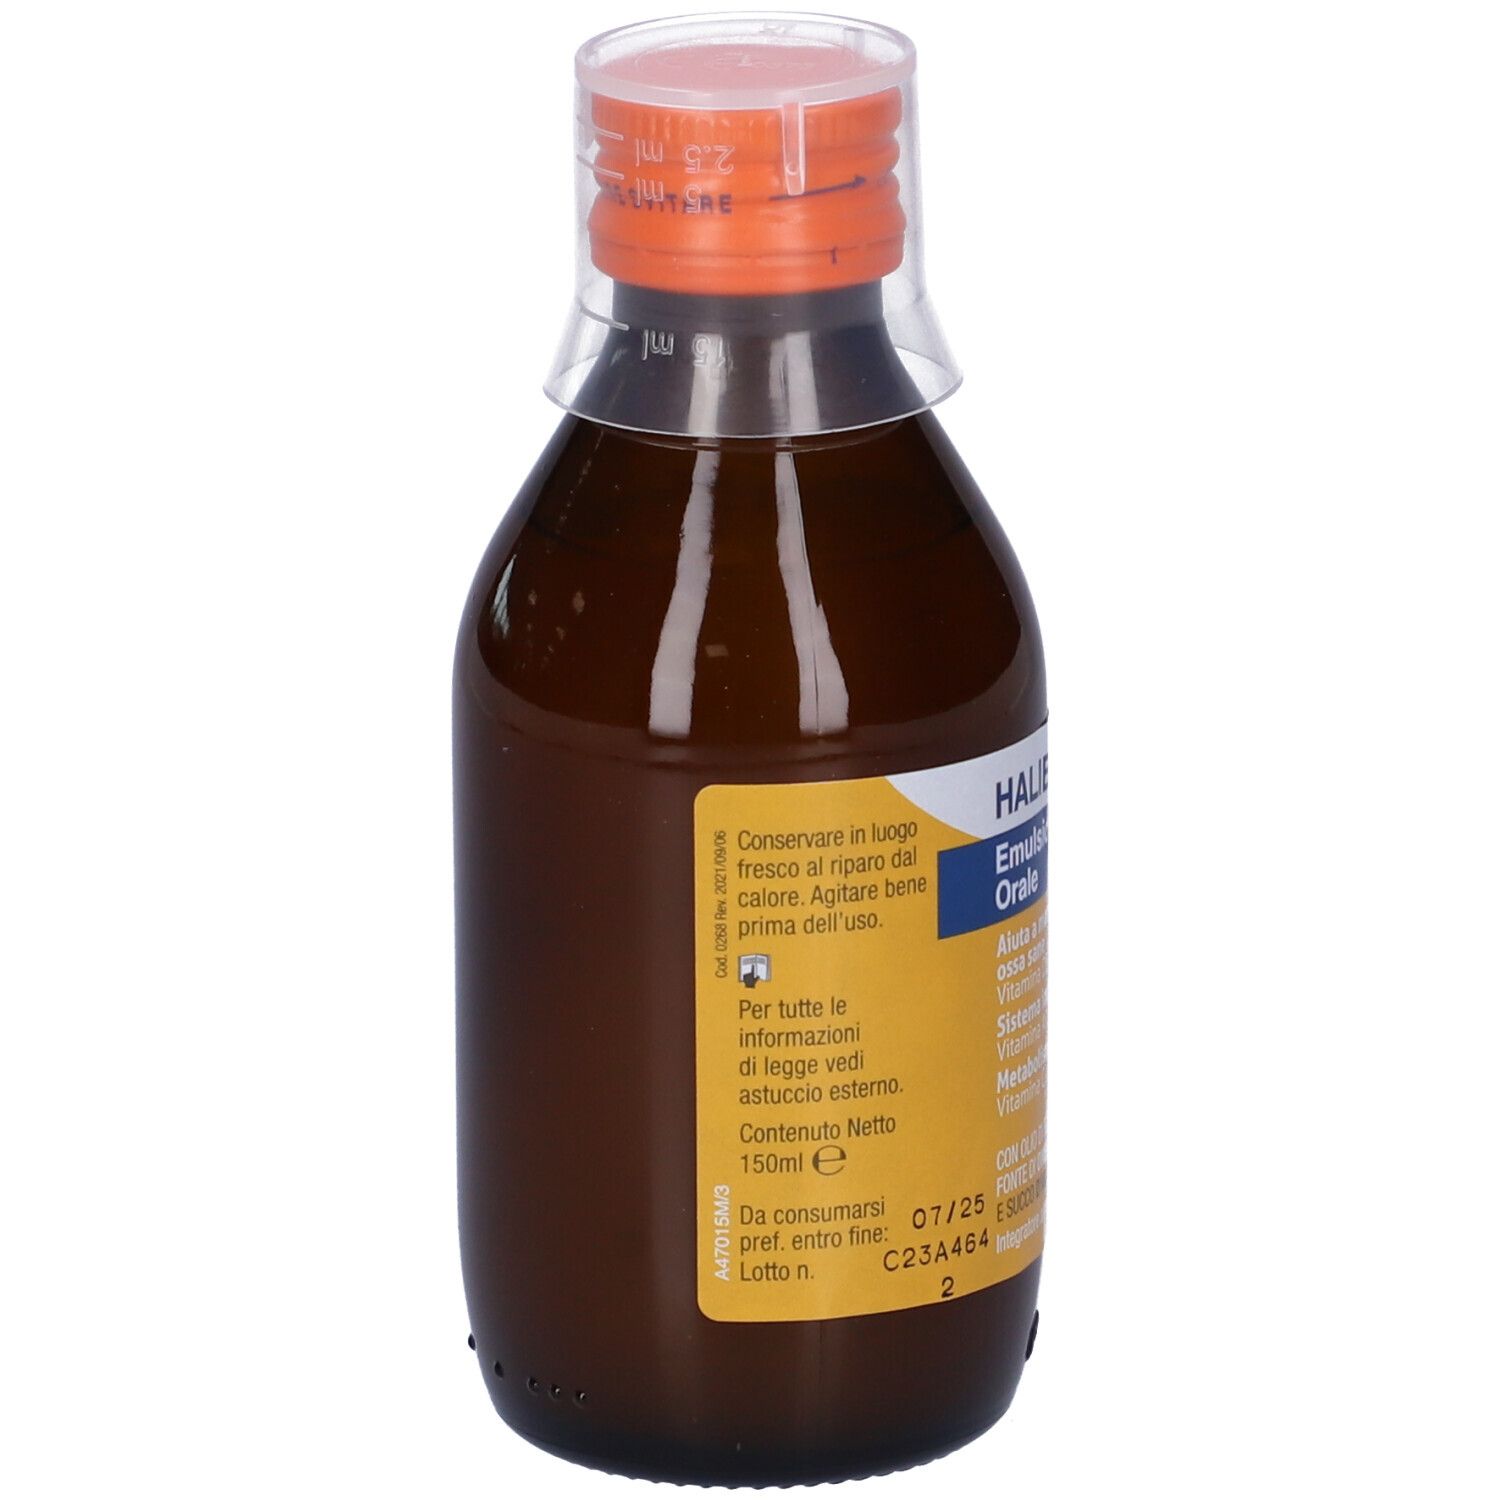 Haliborange® Emulsione Orale